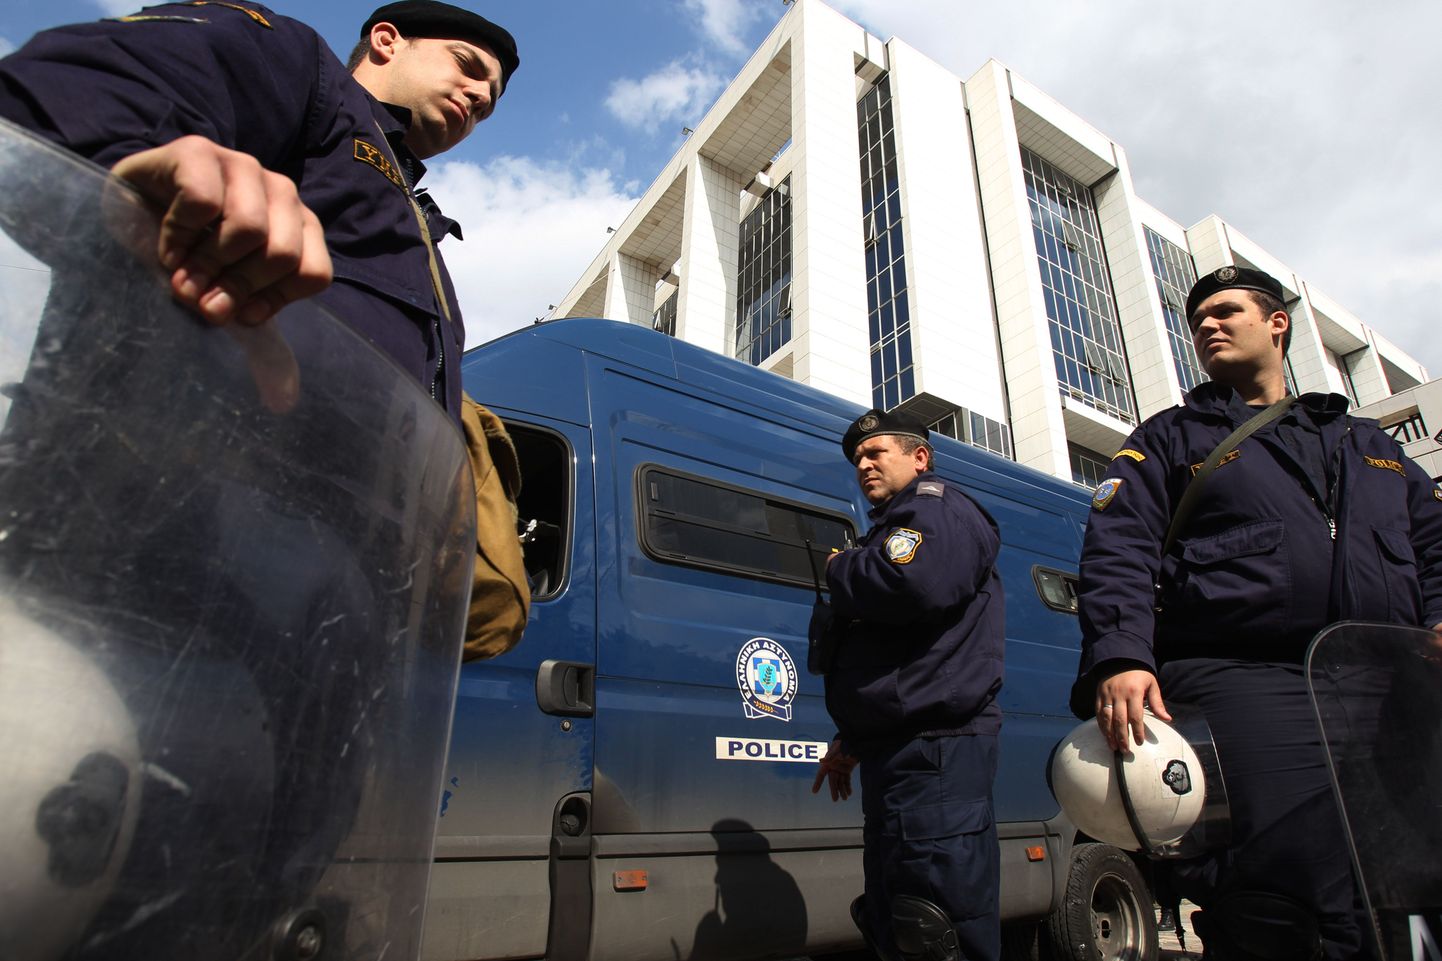 Kreeka politseinikud möödunud aastal endist sotsialistist ministrit Akis Tsochatzopoulost kohtusse toimetamas.